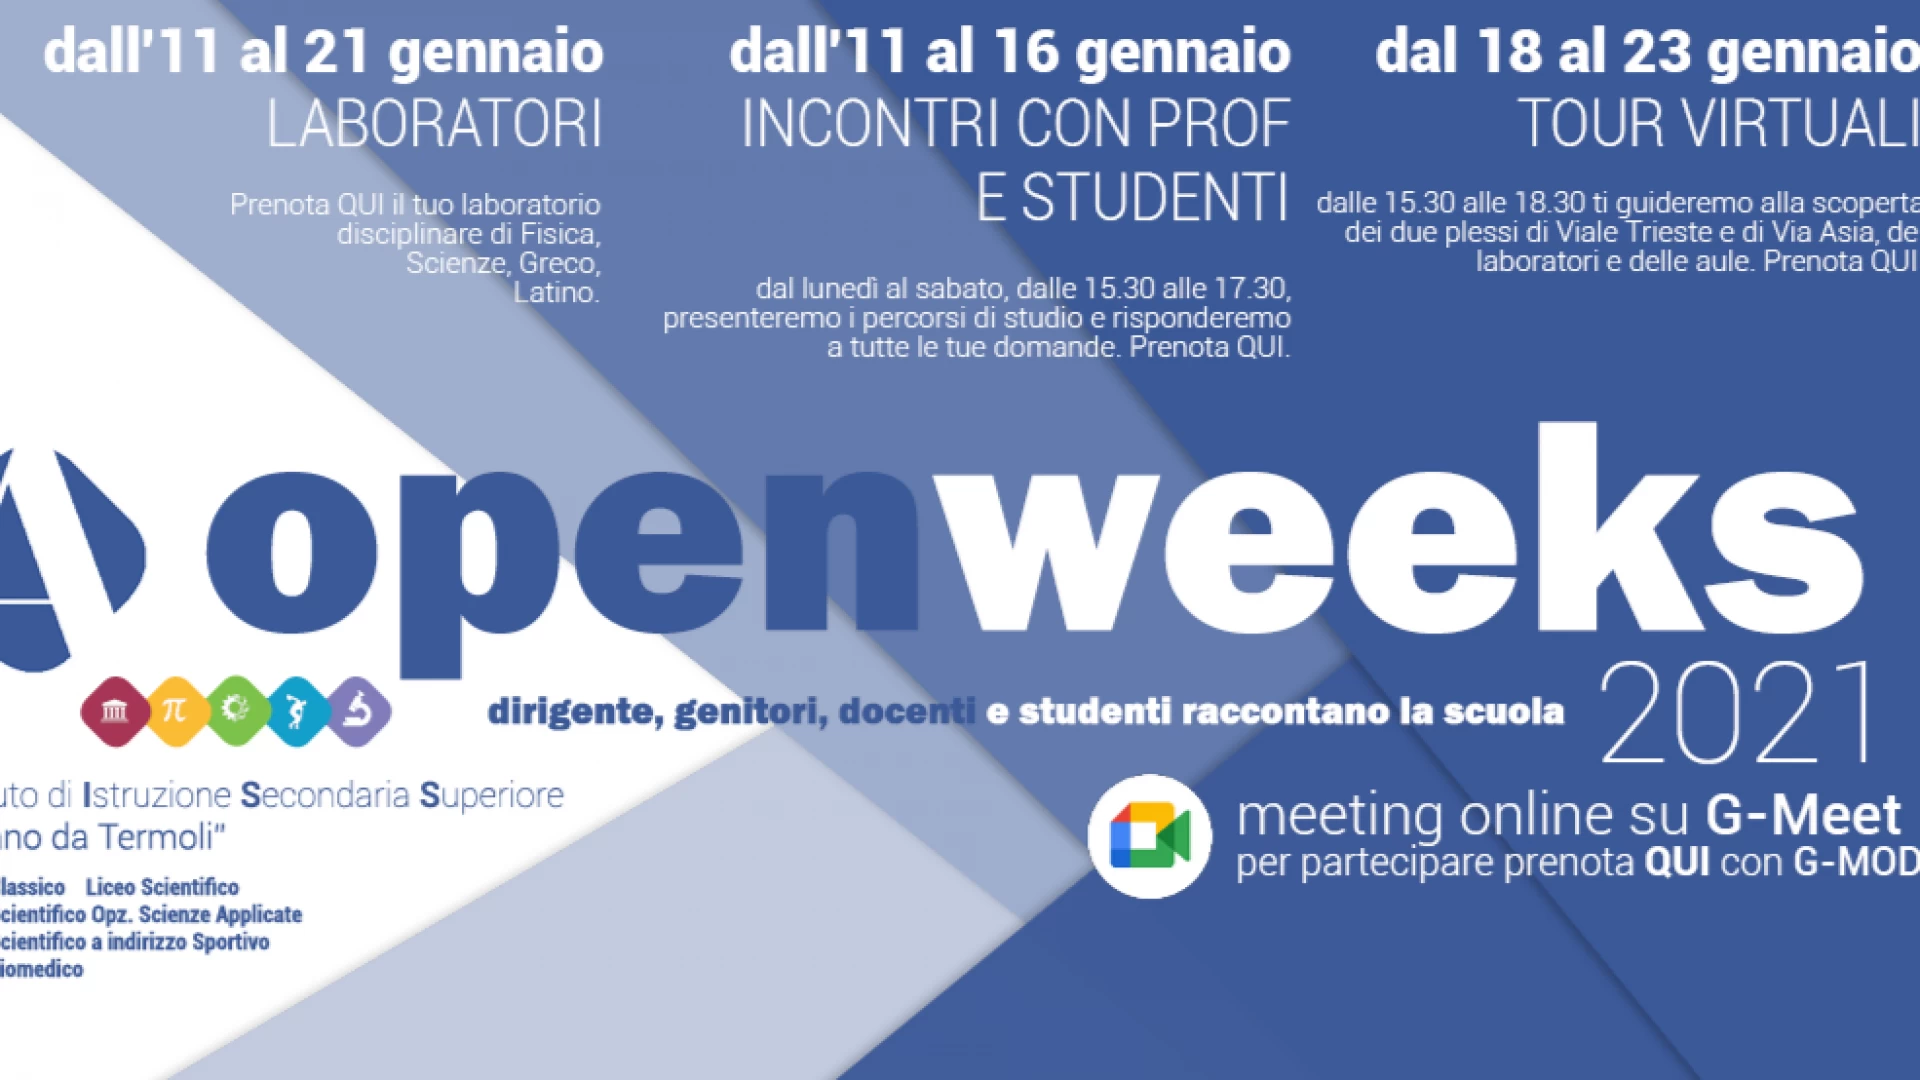 Termoli: all'Istituto Alfano al via gli Open weeks